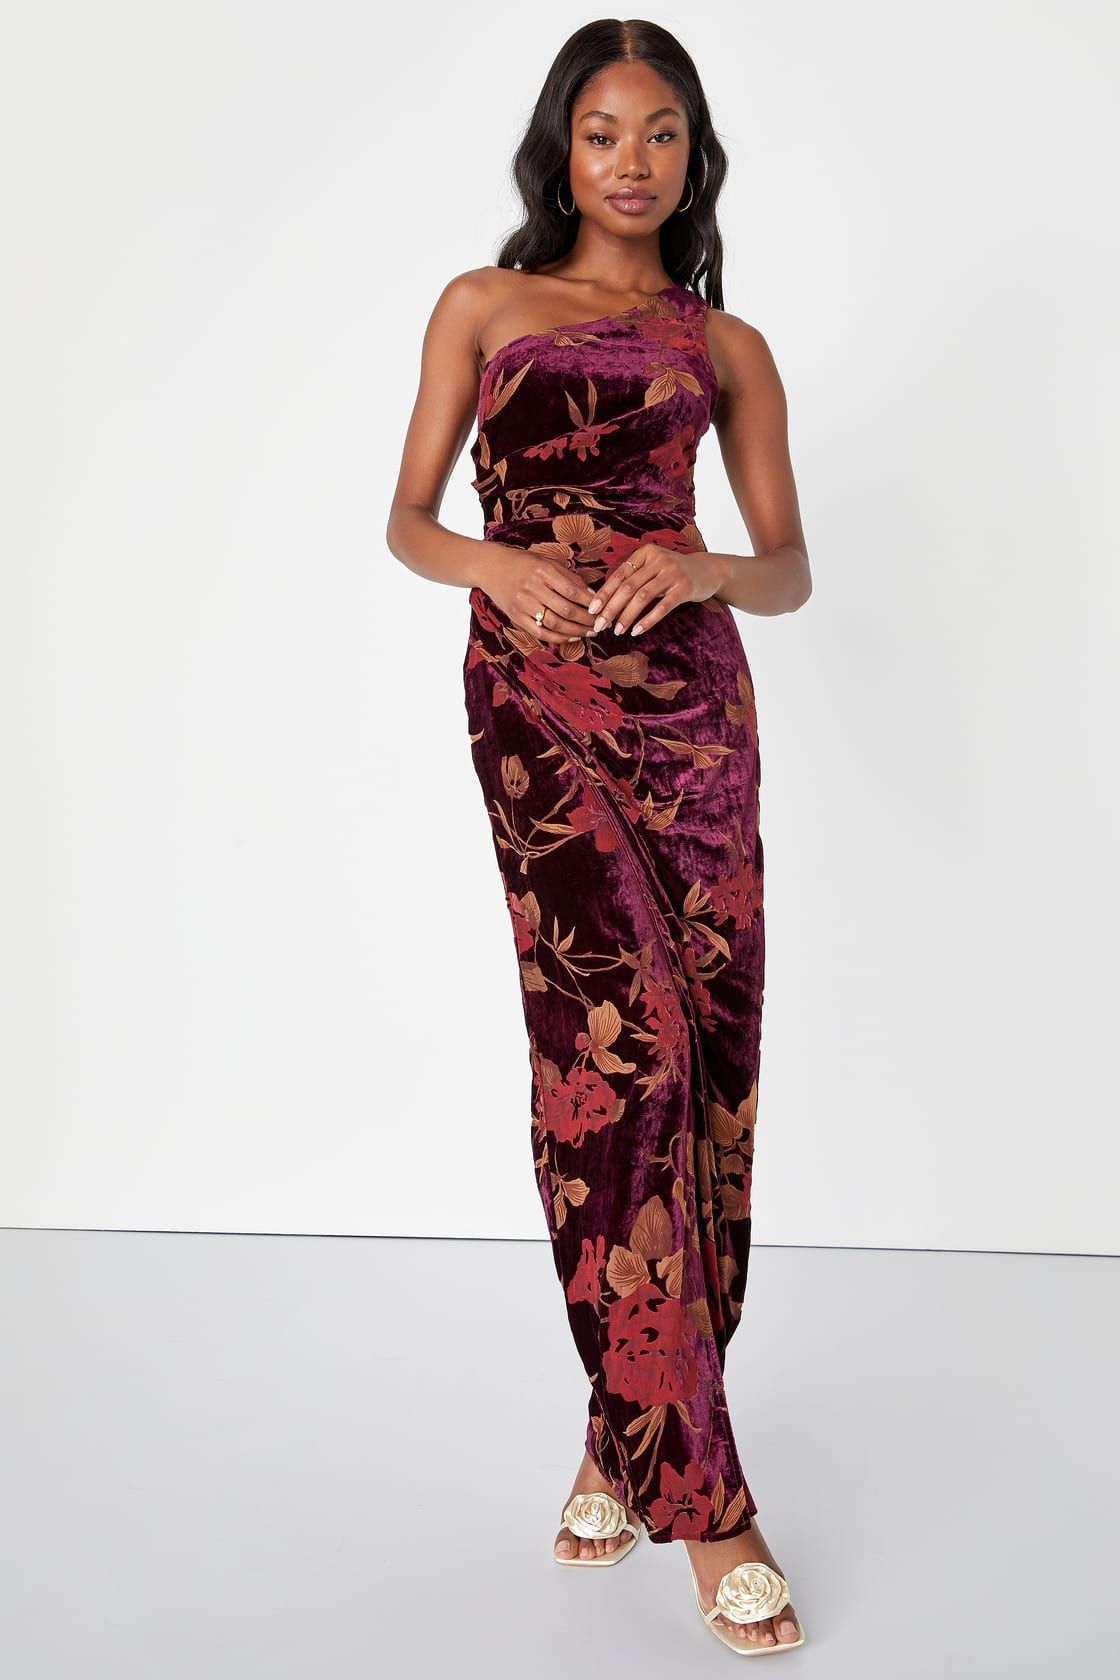 Unreal Awe Burgundy Floral Burnout Velvet One-Shoulder Dress | Lulus (US)